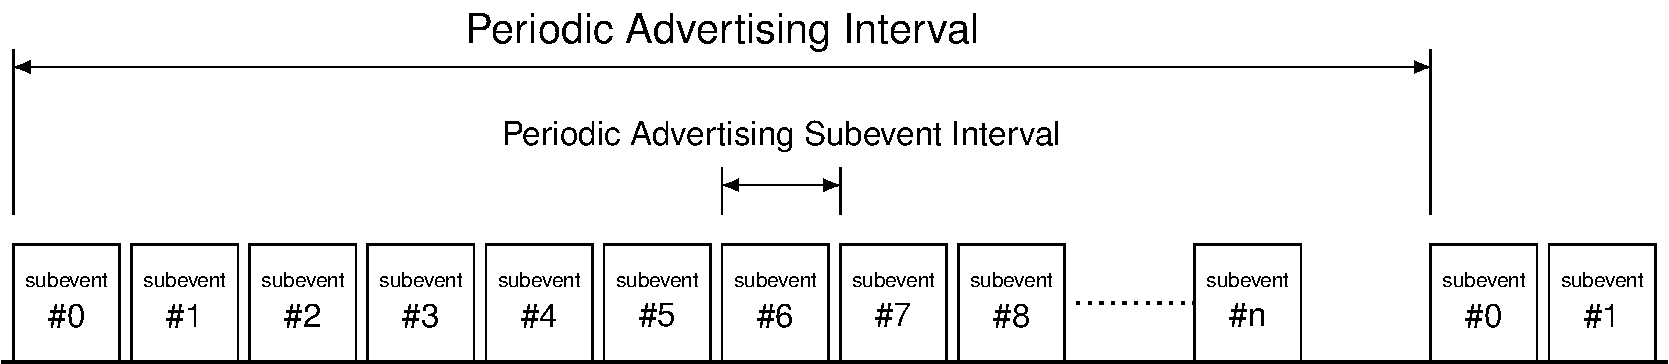 Periodic Advertising Subevents